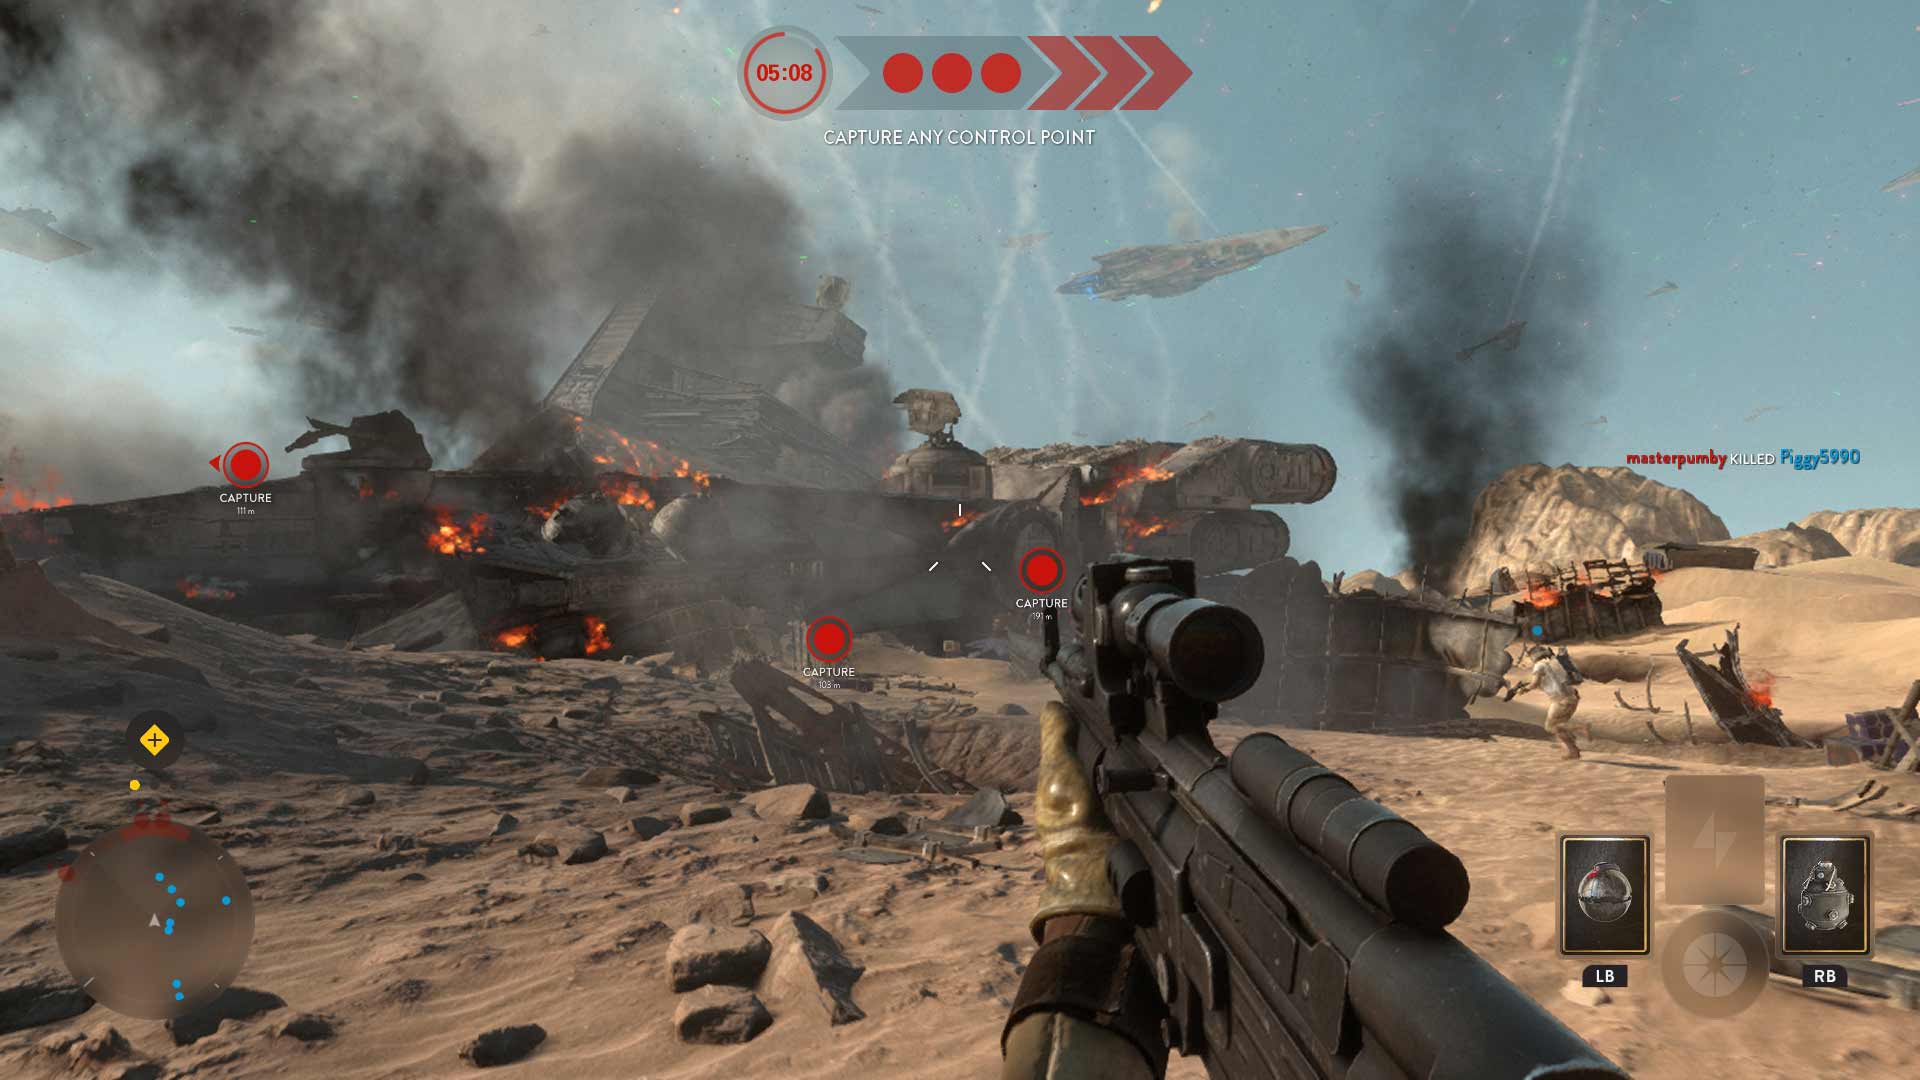 Star Wars Battlefront: Battle of Jakku Screenshot